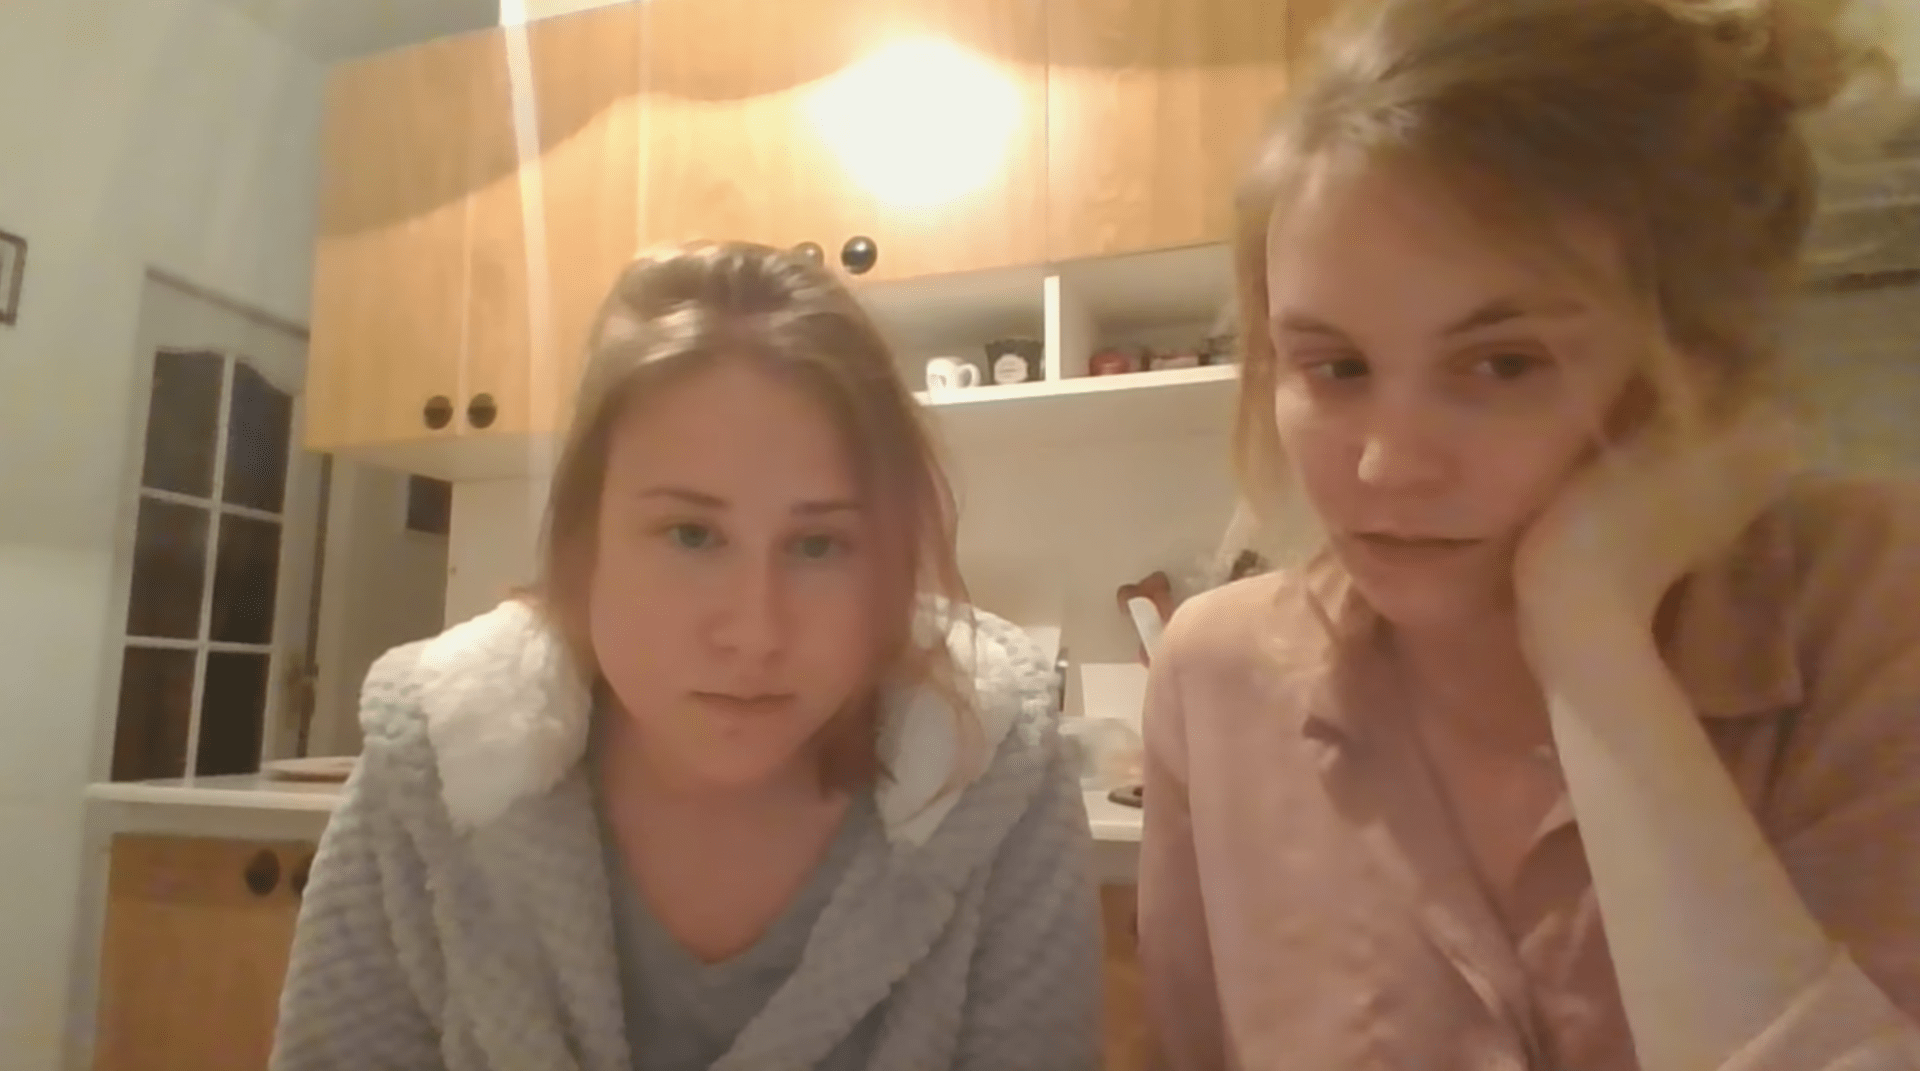 Video s dívkami, které mají být nakažené koronavirem